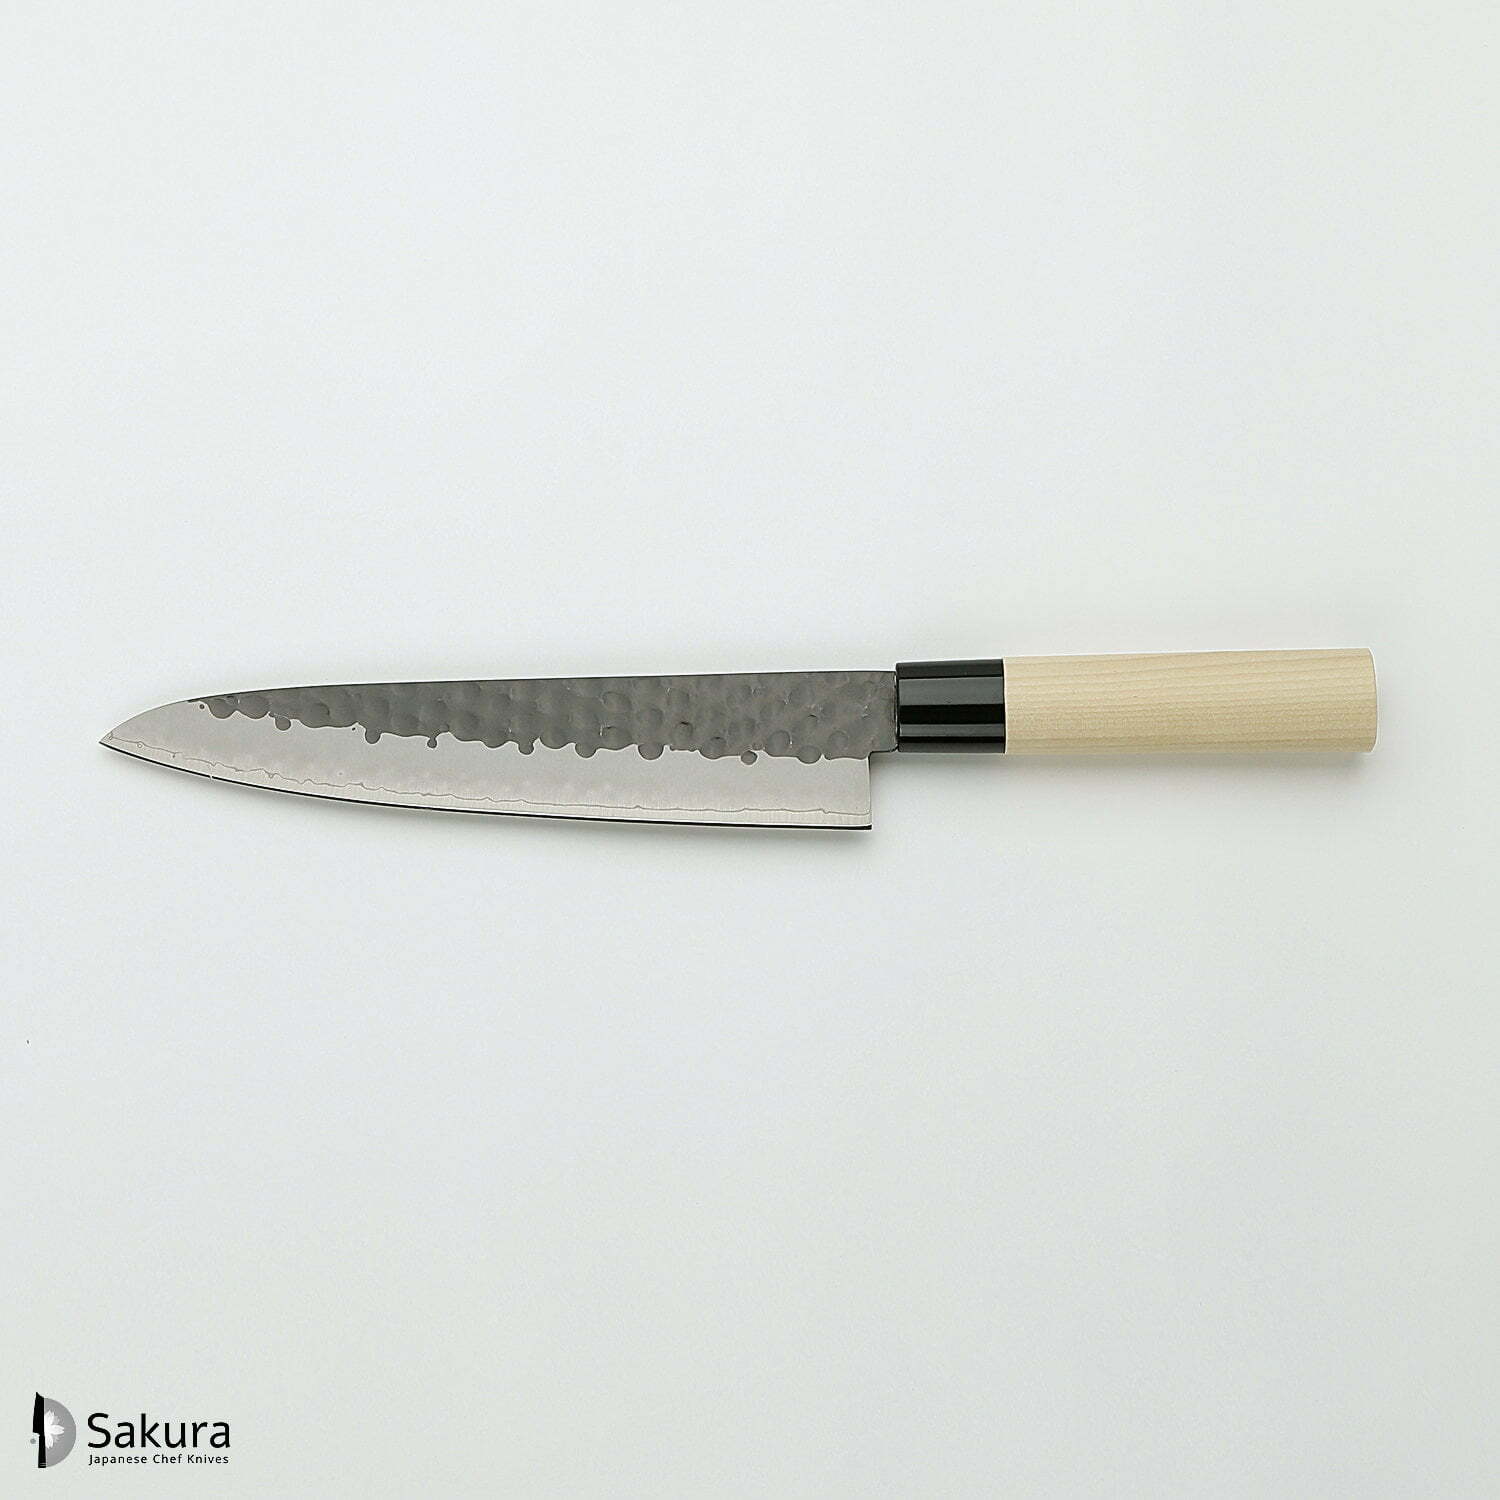 סכין שף רב-תכליתית גִּיוּטוֹ 210מ״מ מחוזקת 3 שכבות: פלדת פחמן יפנית VG-10 עטופה פלדת אל-חלד גימור קורואיצ׳י שחור עם ריקוע פטיש טוג׳ירו יפן